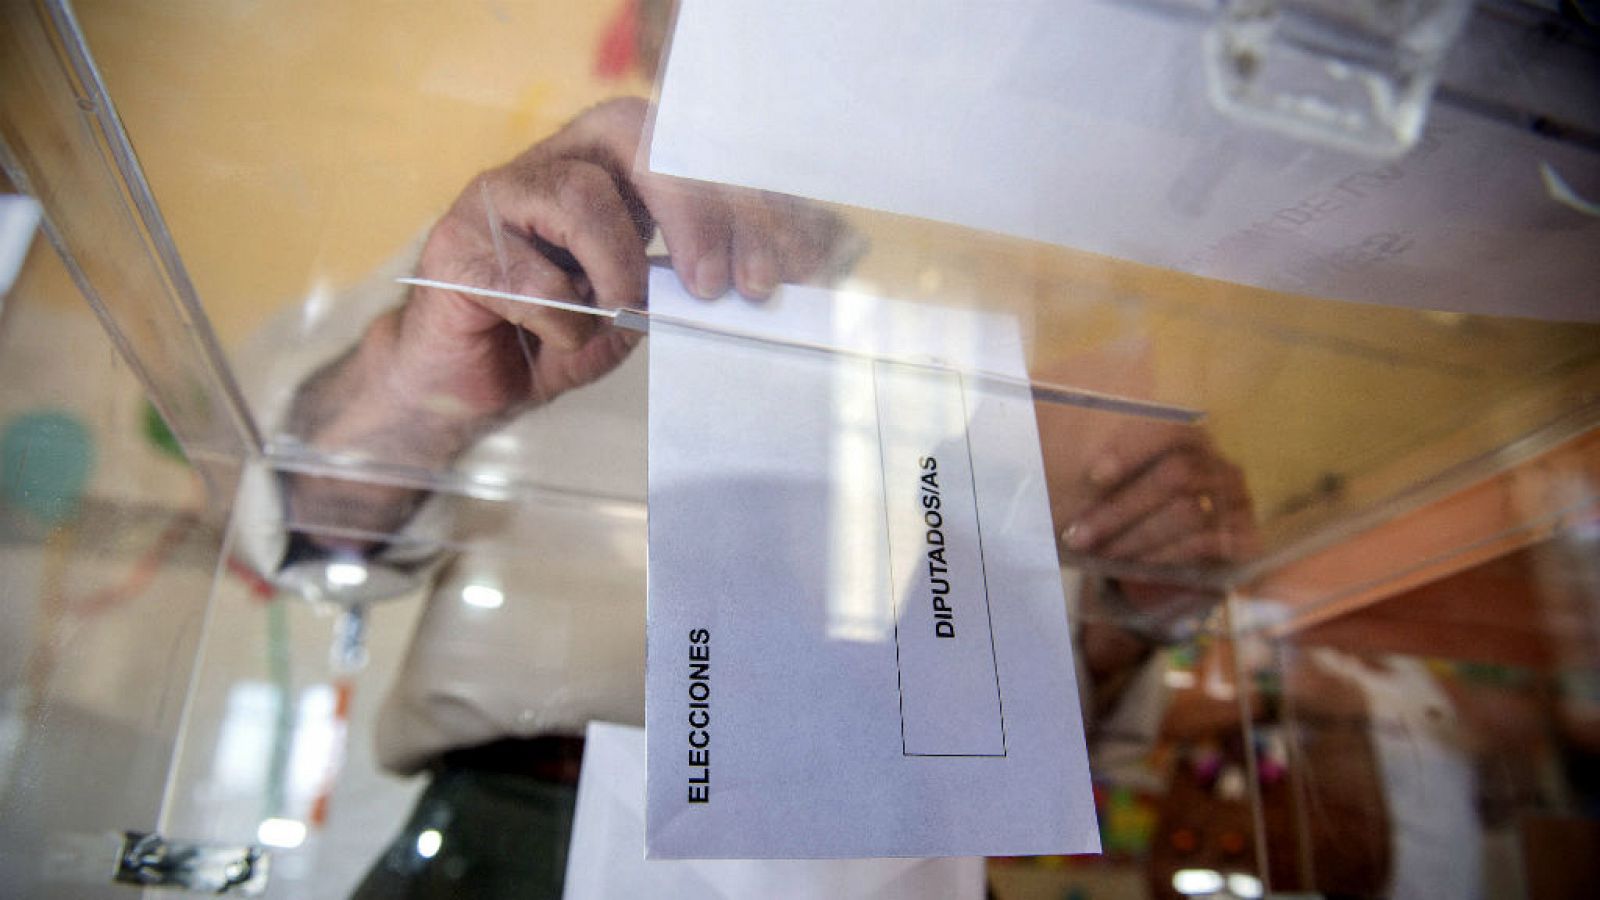 14 horas - La nueva encuesta electoral del CIS levanta polémica